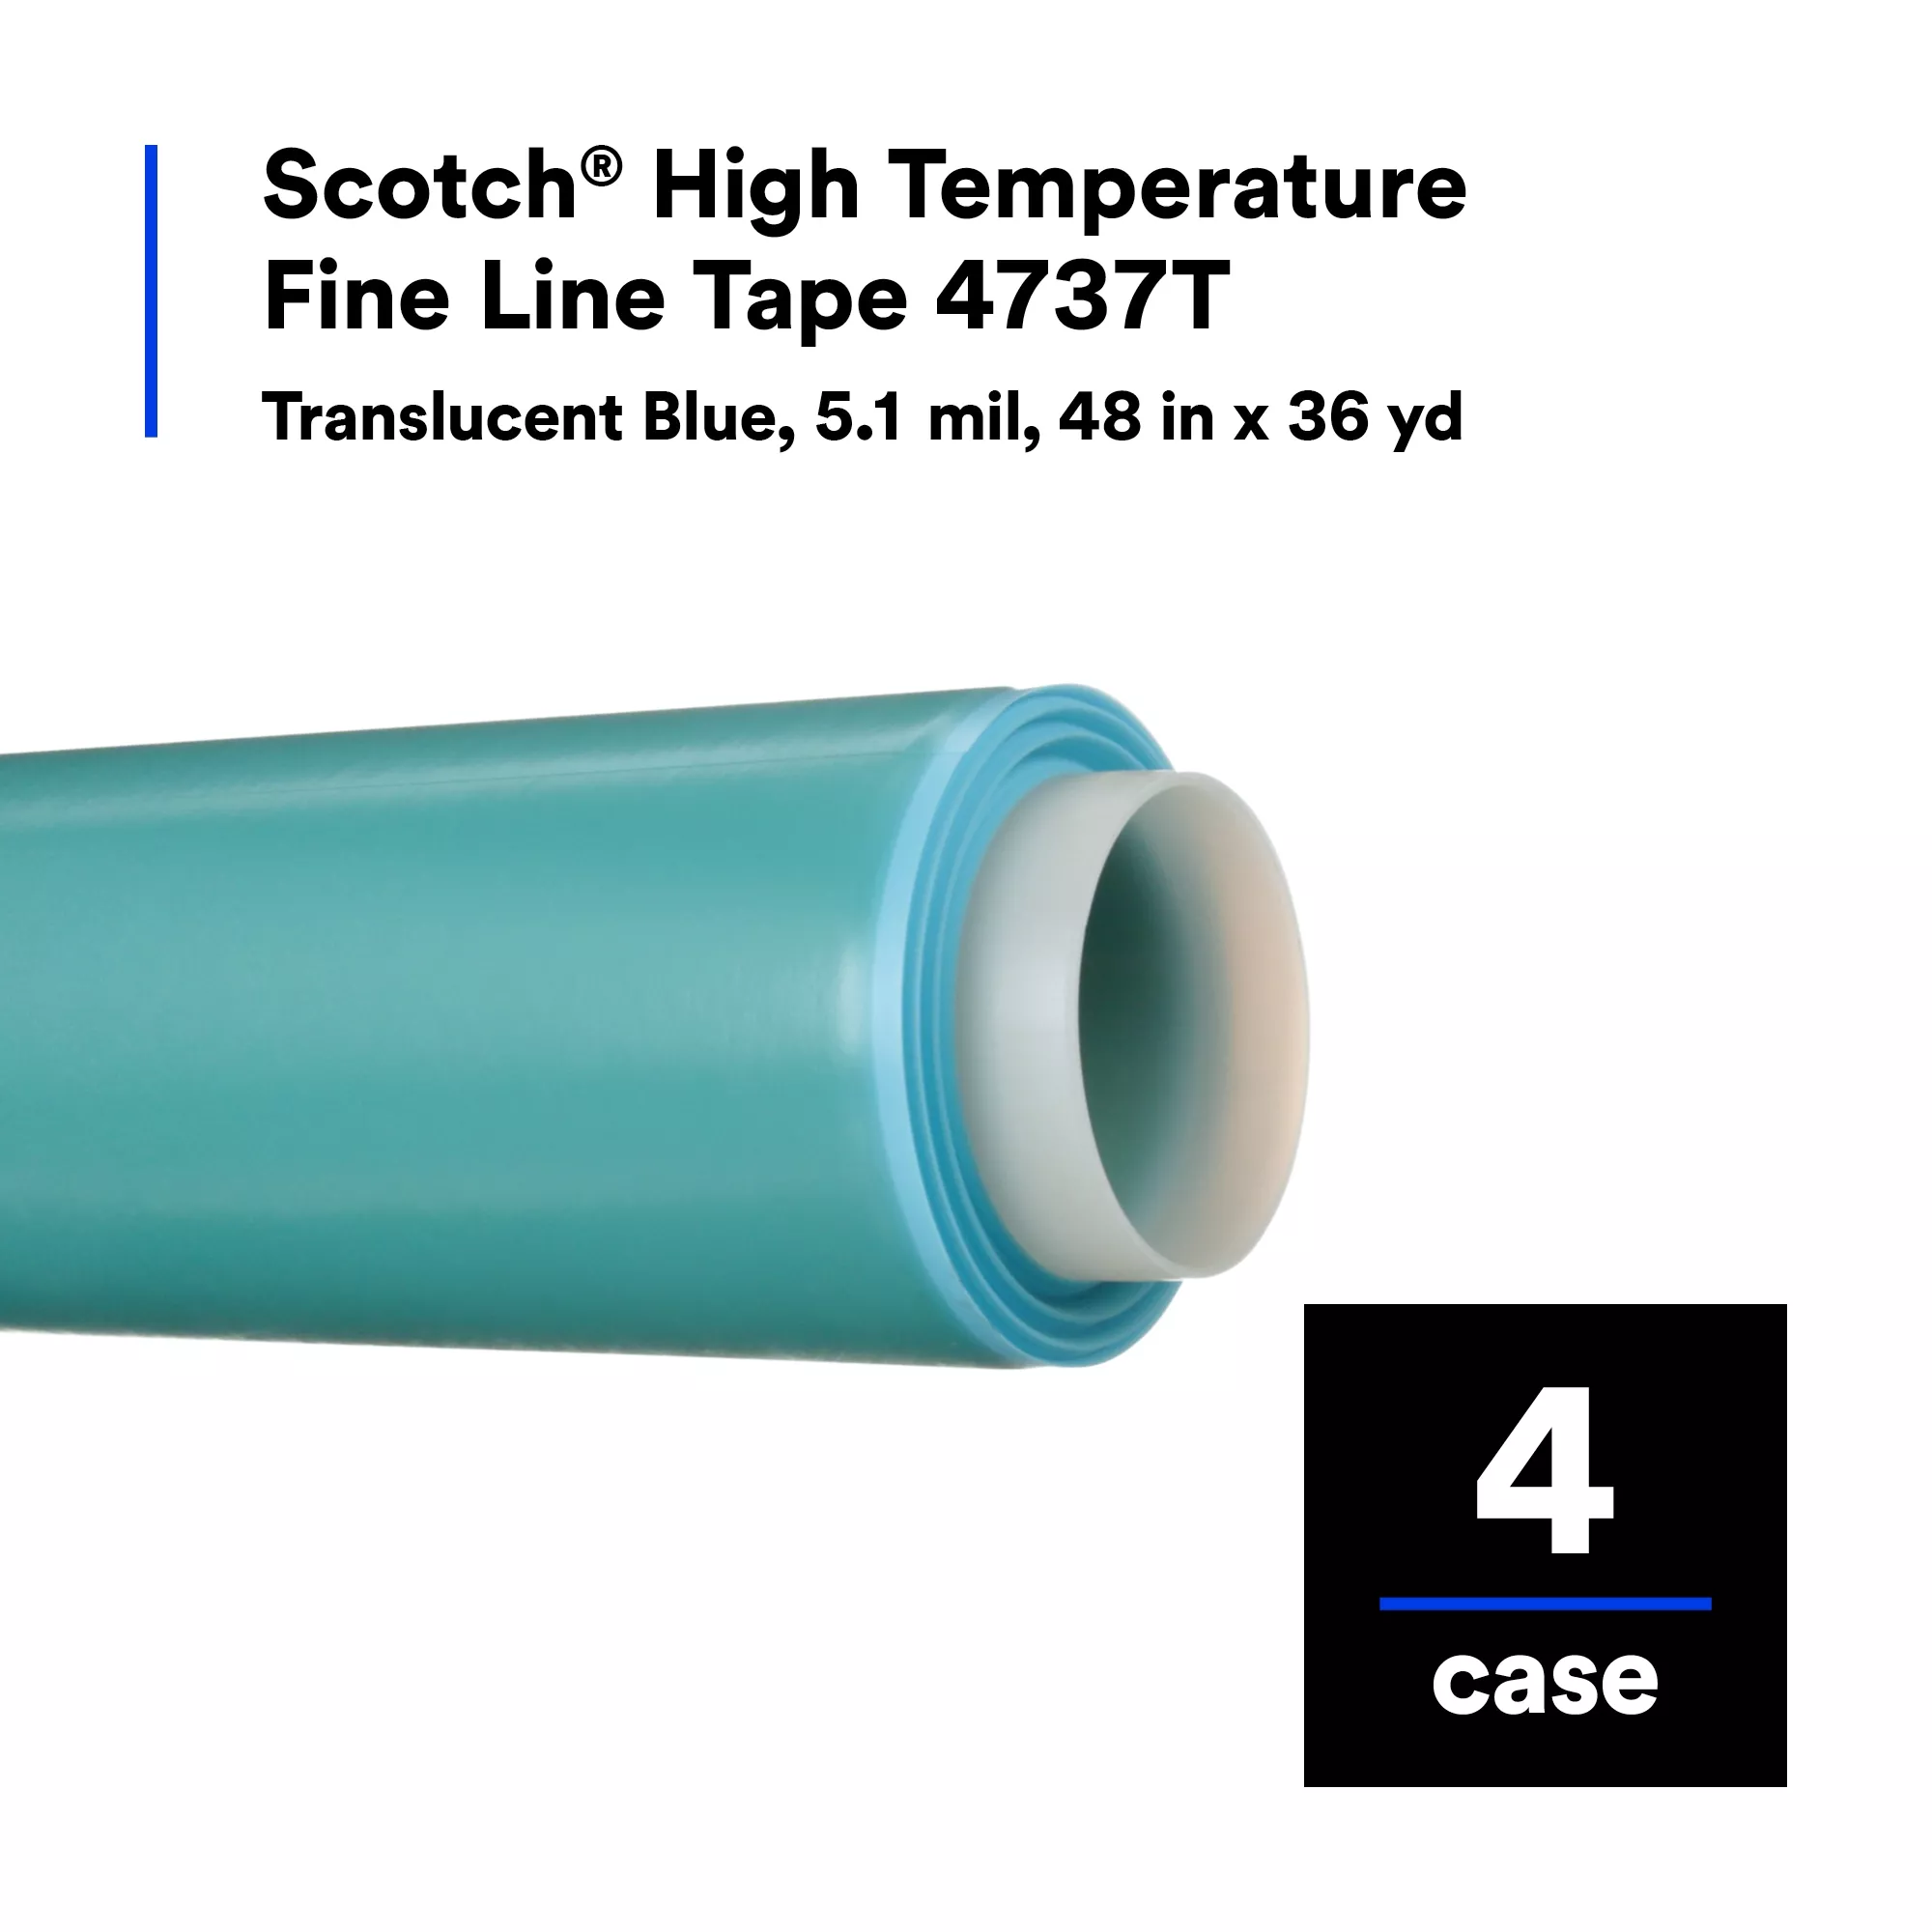 Scotch® High Temperature Fine Line Tape 4737T, Translucent Blue, 5.4
mil, 48 in x 36 yd, 4/Case